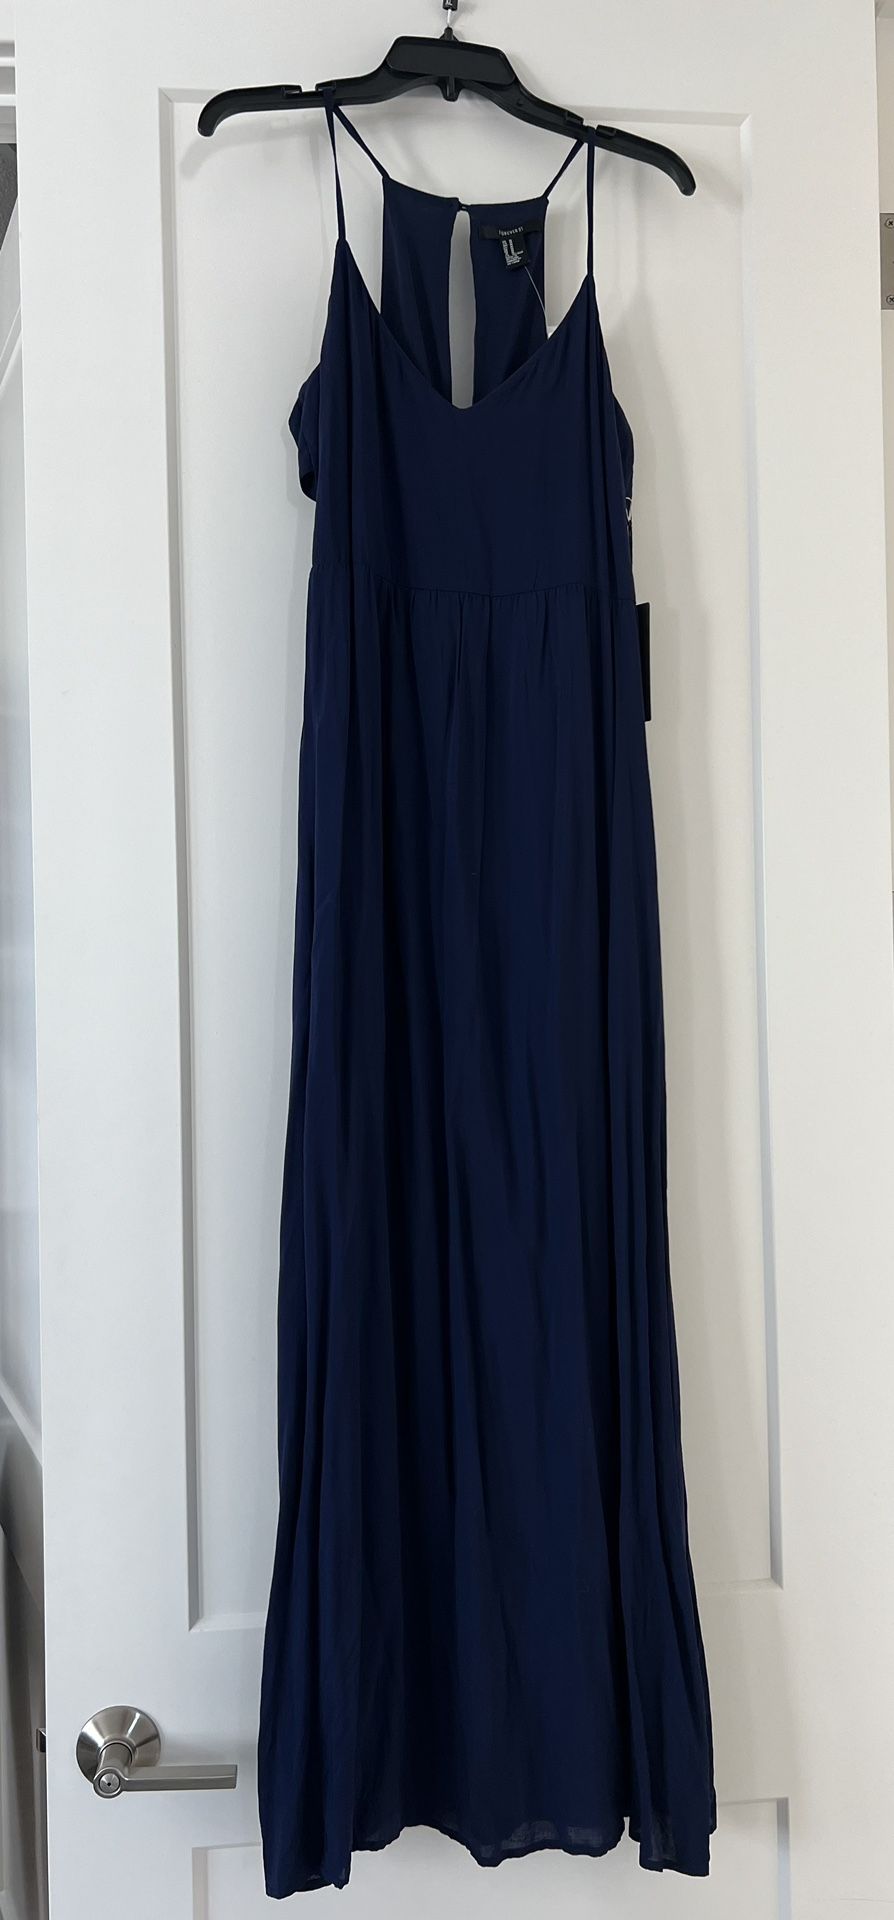 Long Navy Blue Dress 